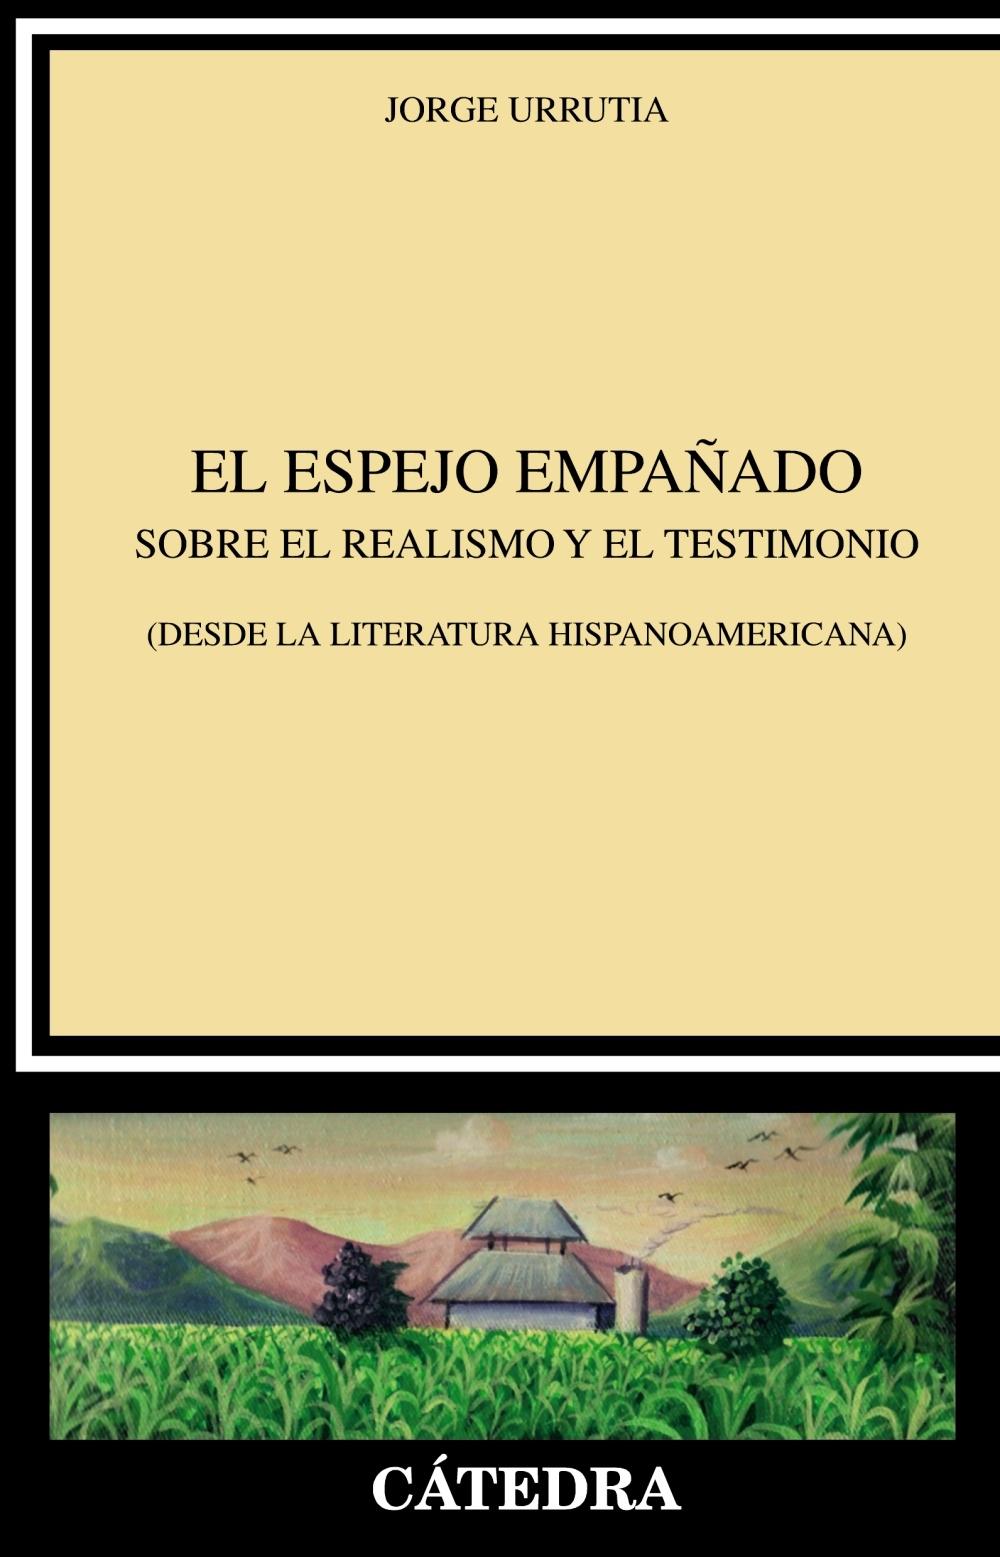 El espejo empañado "Sobre el realismo y el testimonio (desde la literatura hispanoamericana)"